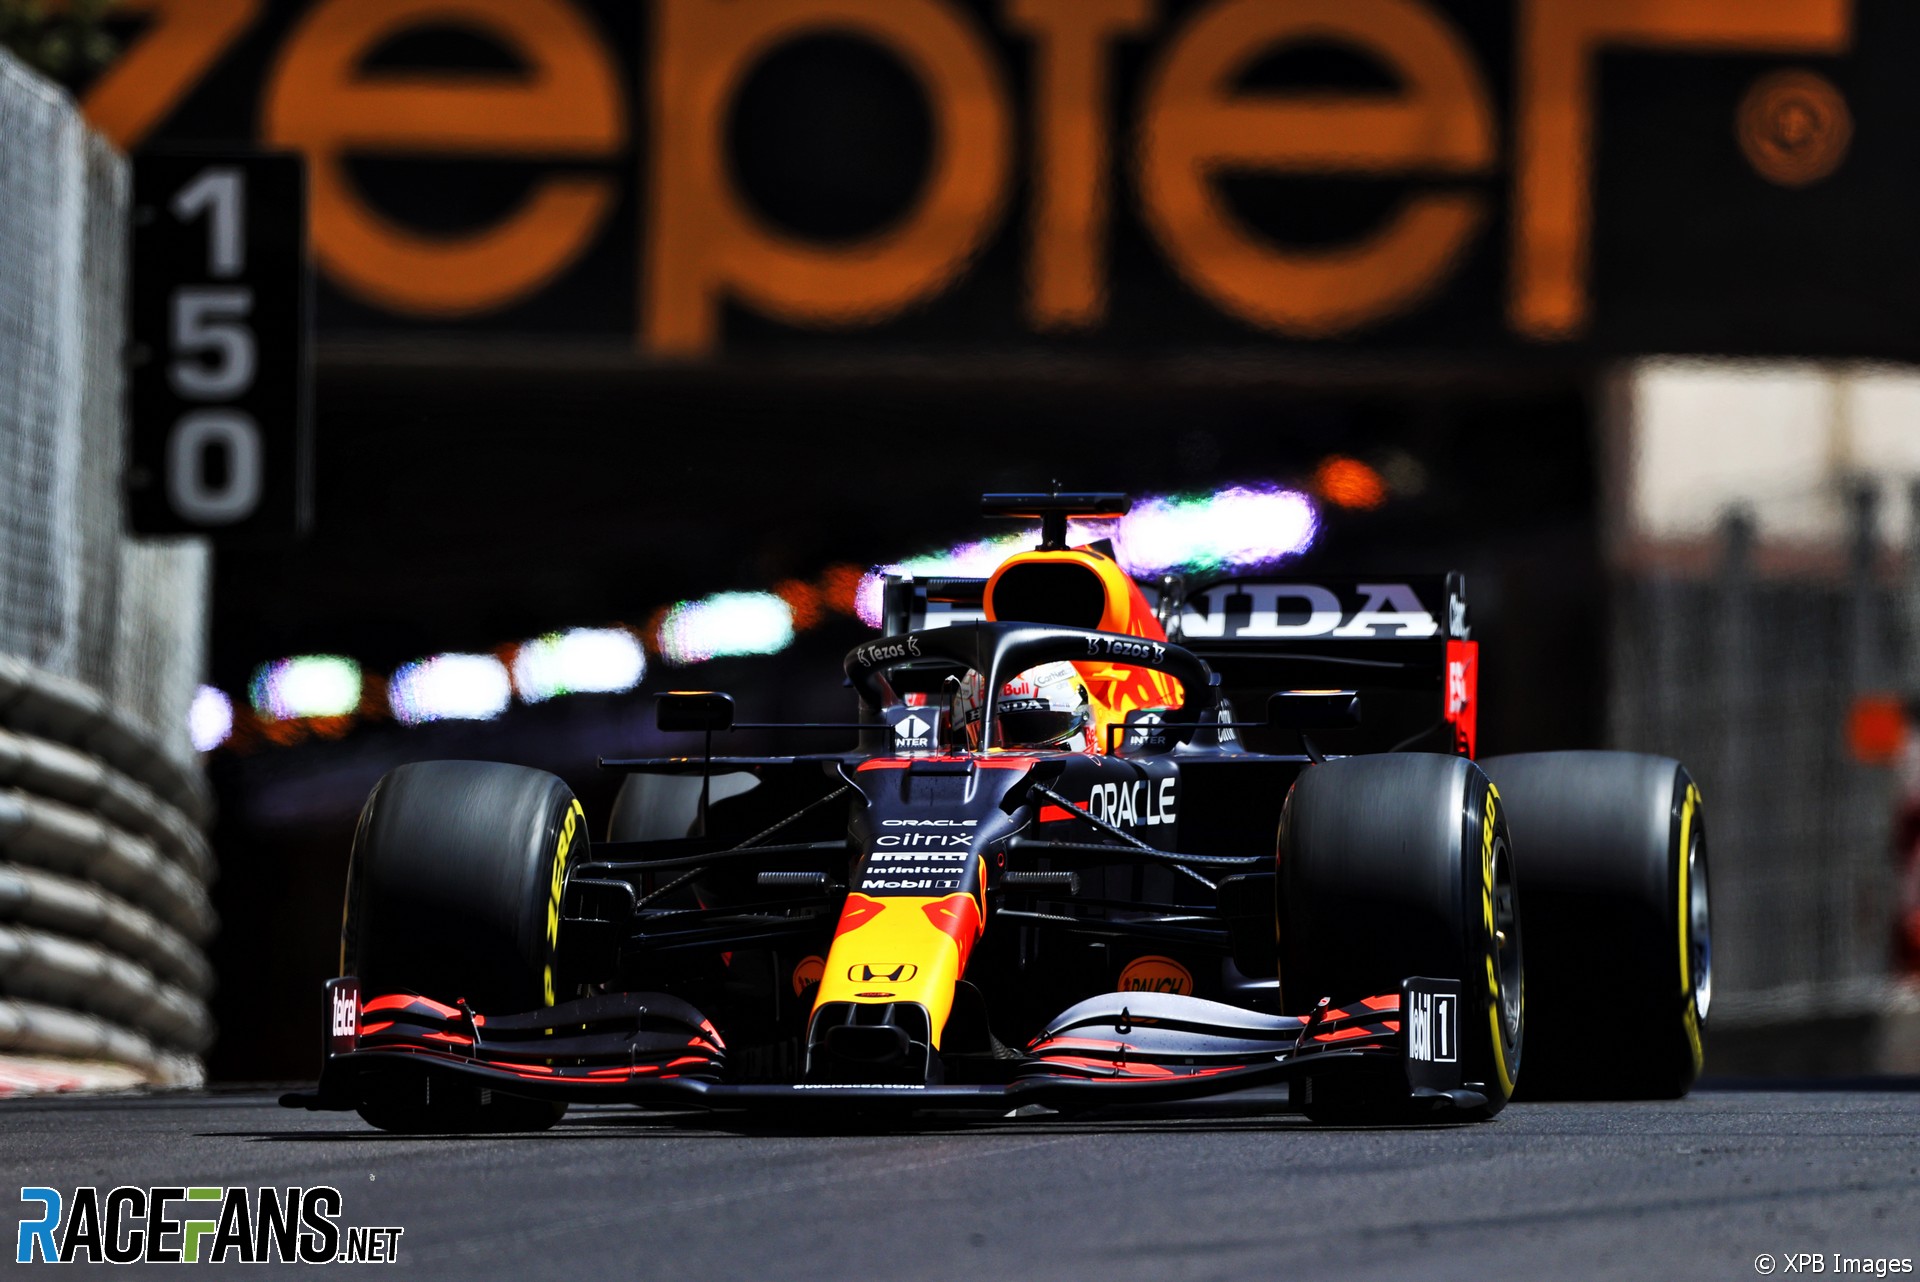 Max Verstappen, Red Bull, Monaco, 2021